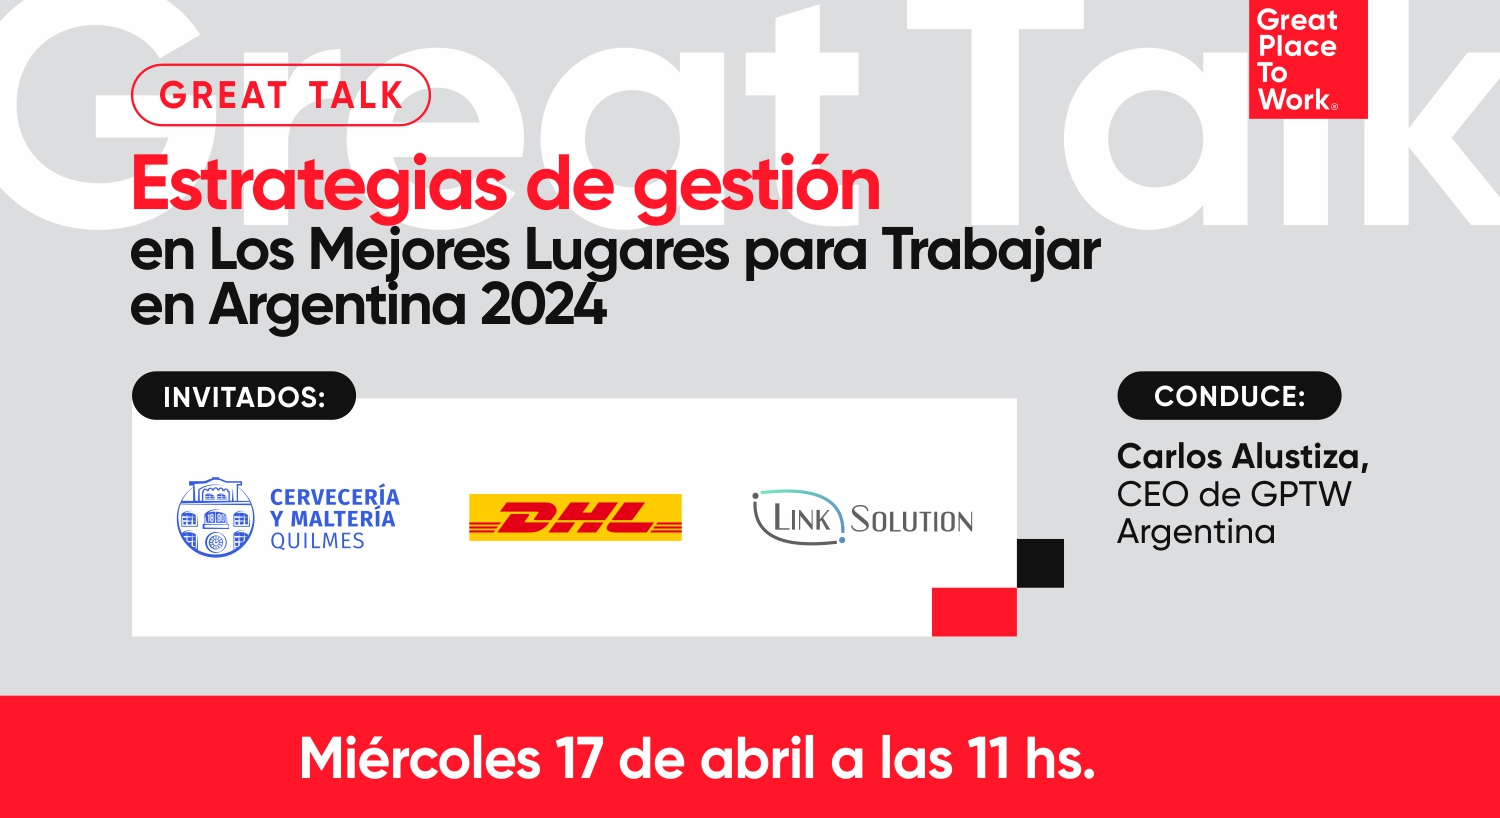 Great Talk | Estrategias de gestión en Los Mejores Lugares para Trabajar en Argentina 2024